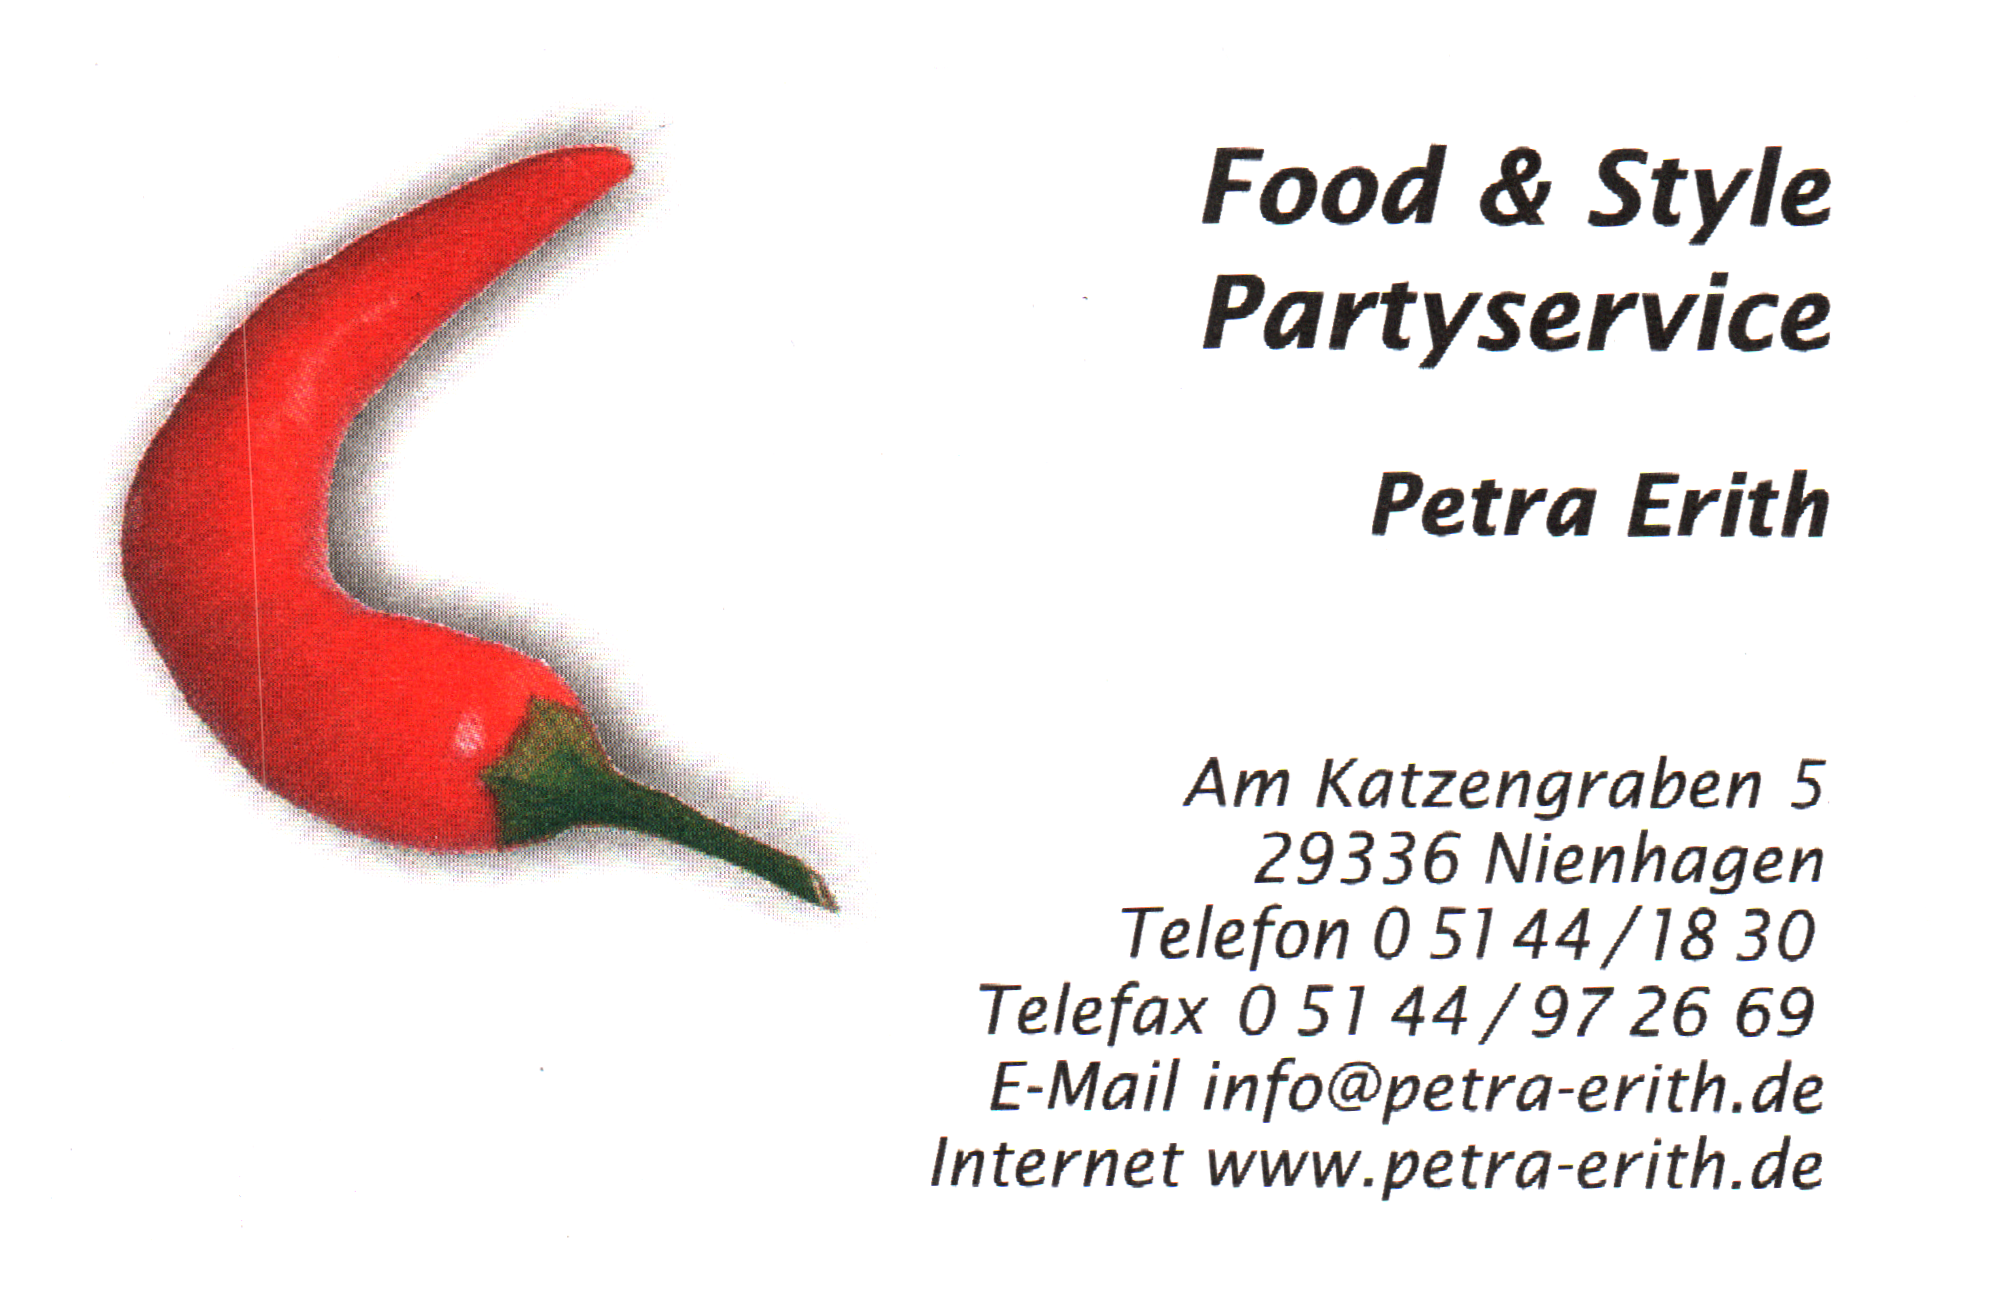 Visitenlarte von Food & Style Partyservice